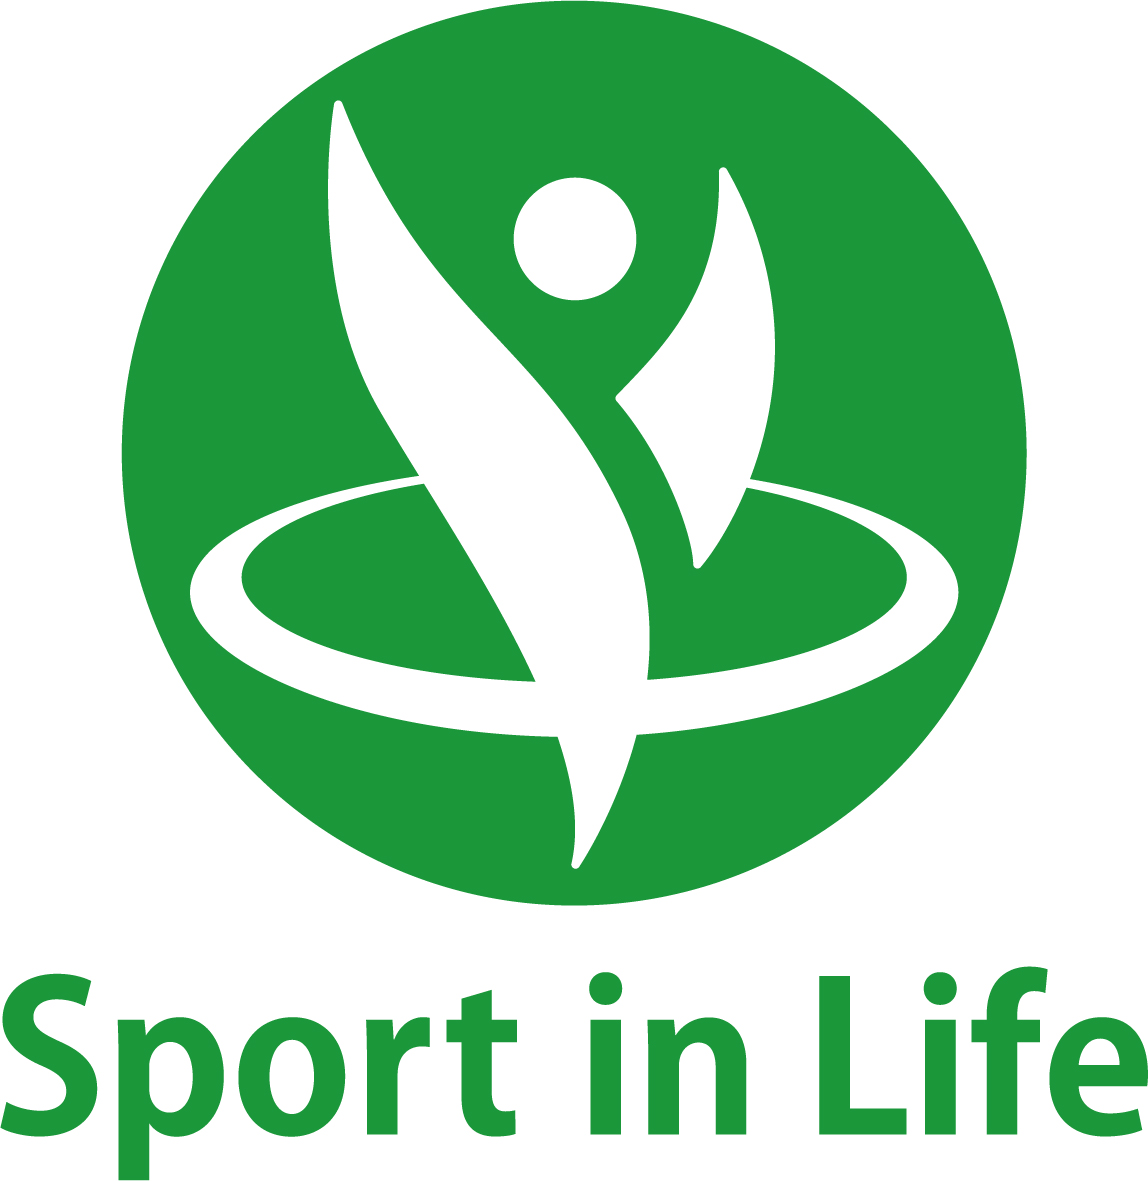 スポーツ庁の Sport In Life のロゴマークを付与されました